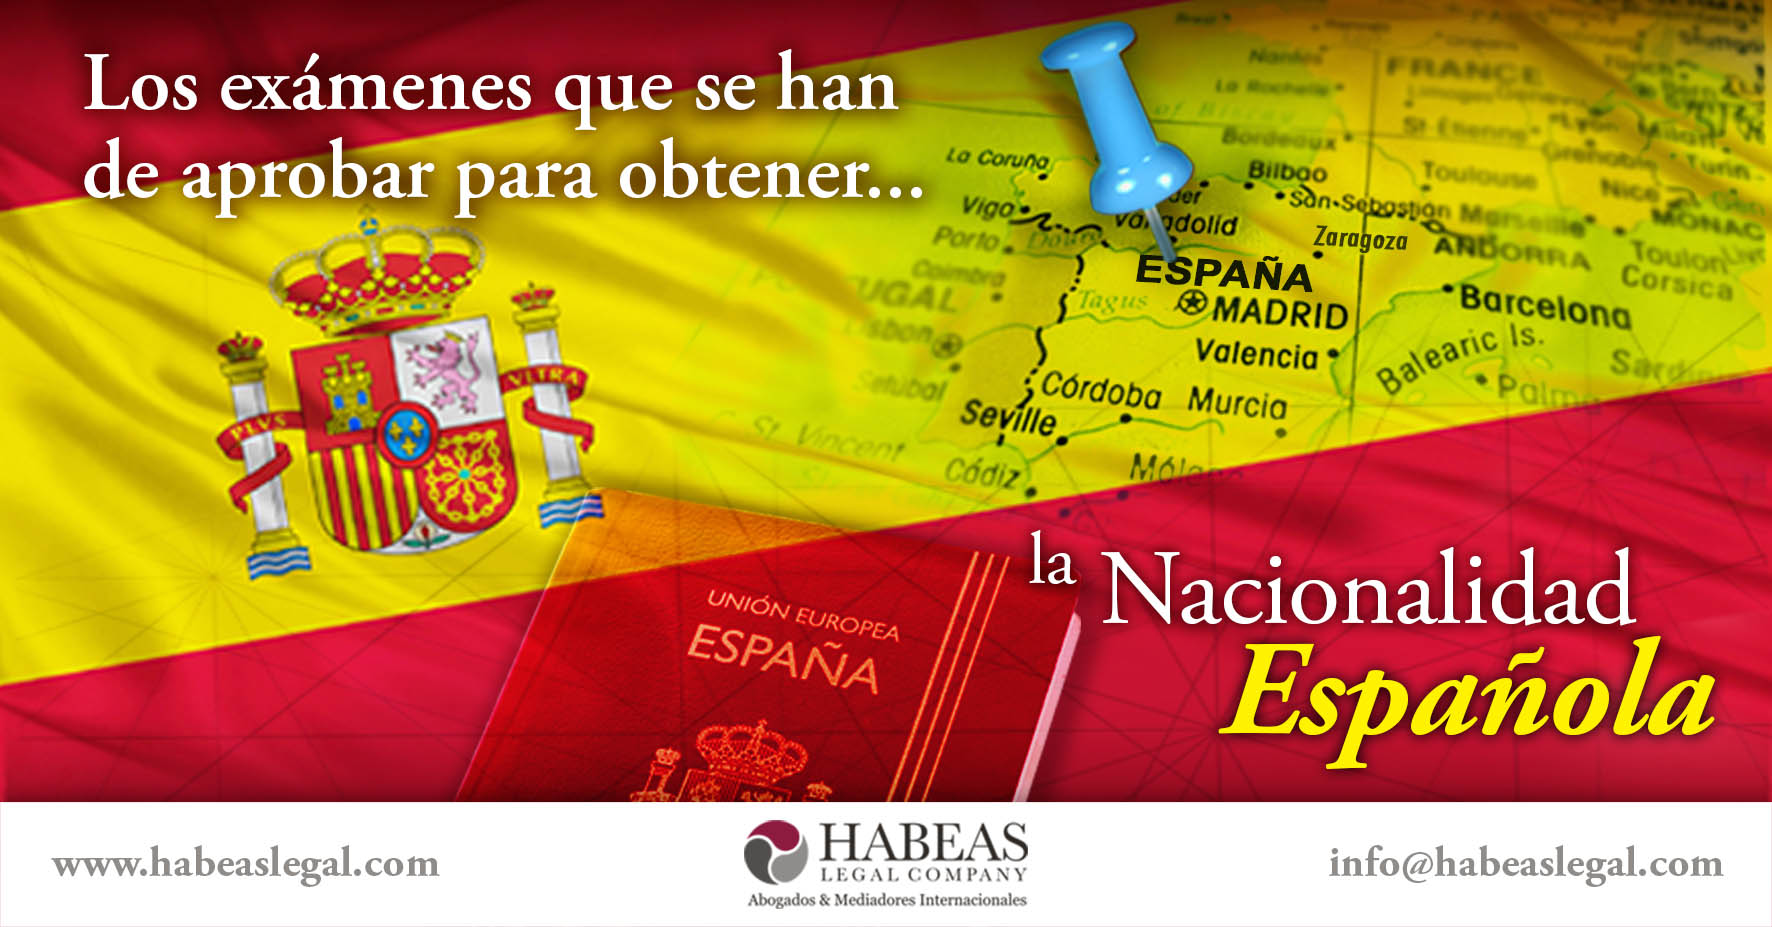 Nacionalidad española examenes Habeas Legal - Blog